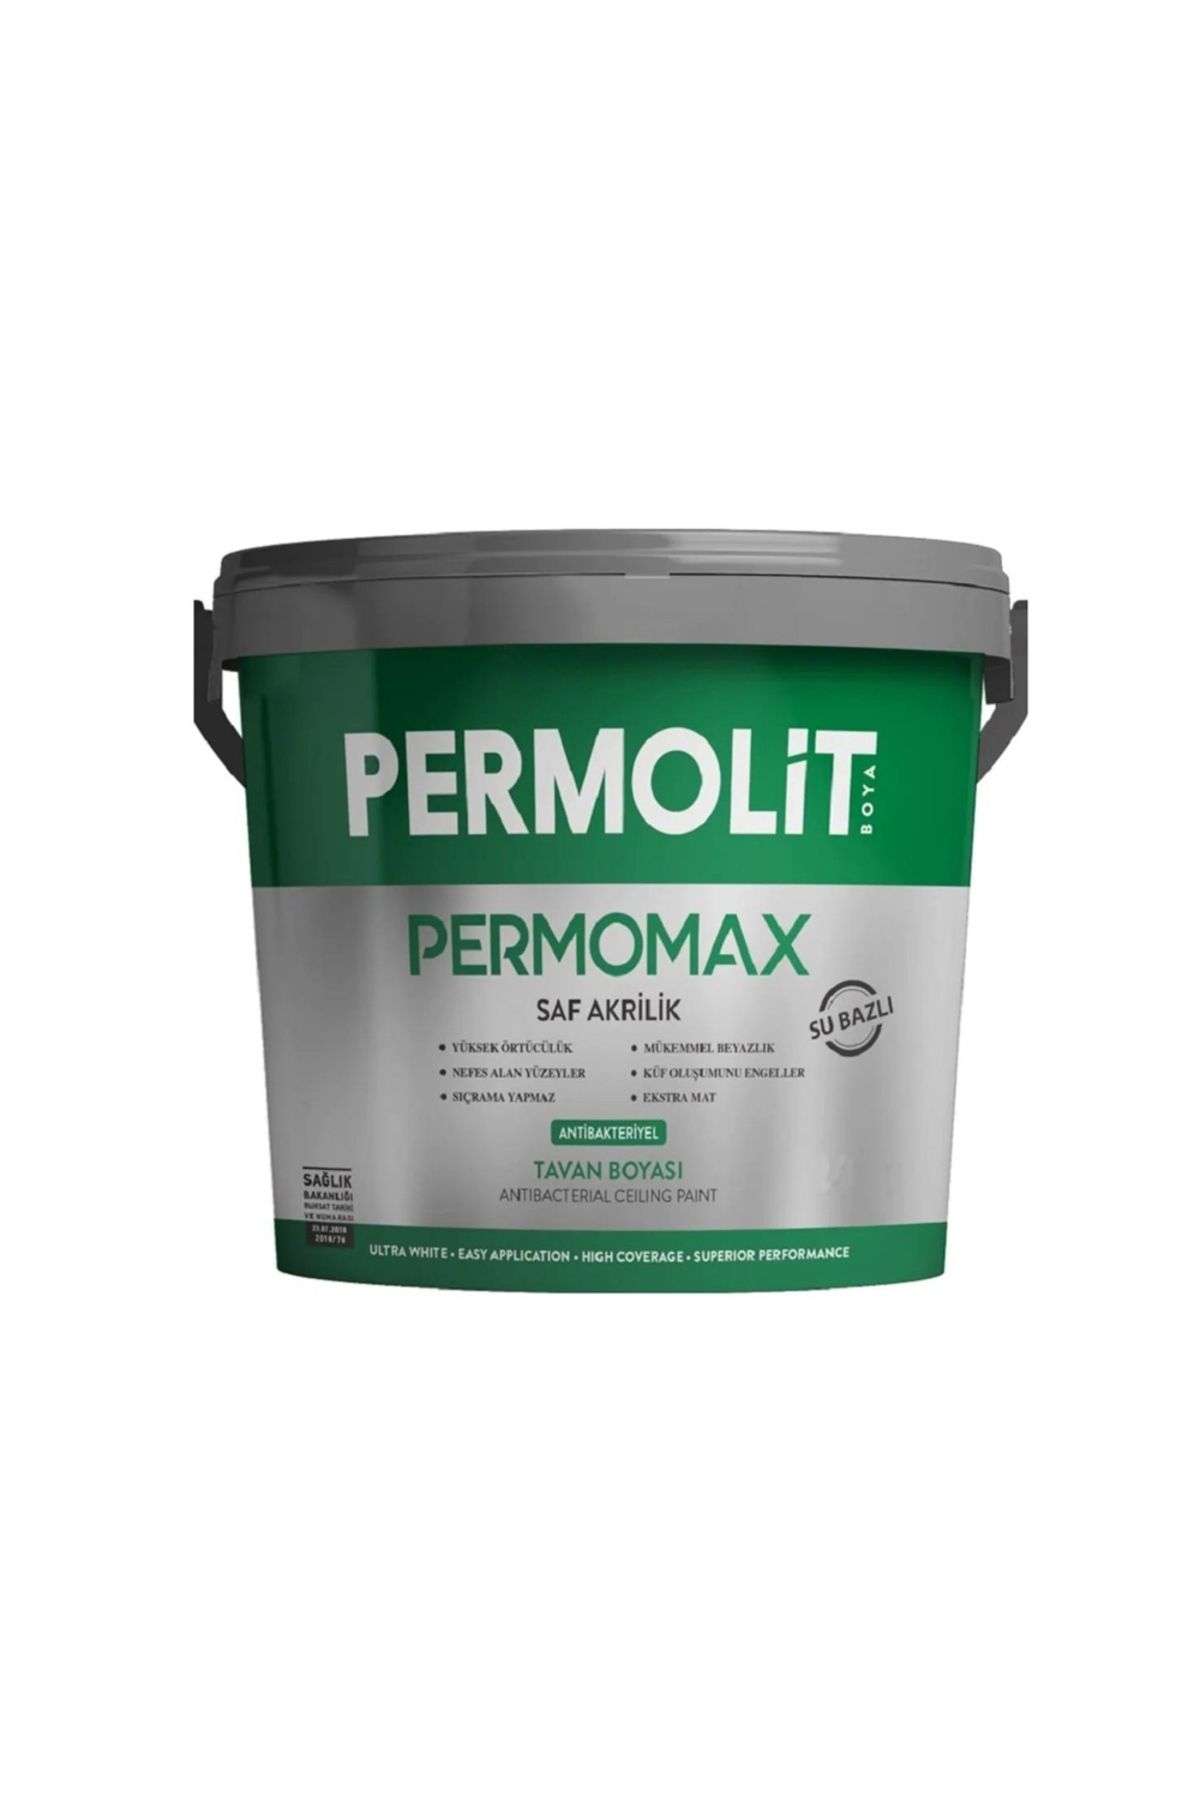 Permolit Permomax Antibakteriyel Antiküf Tavan Boyası 10kg